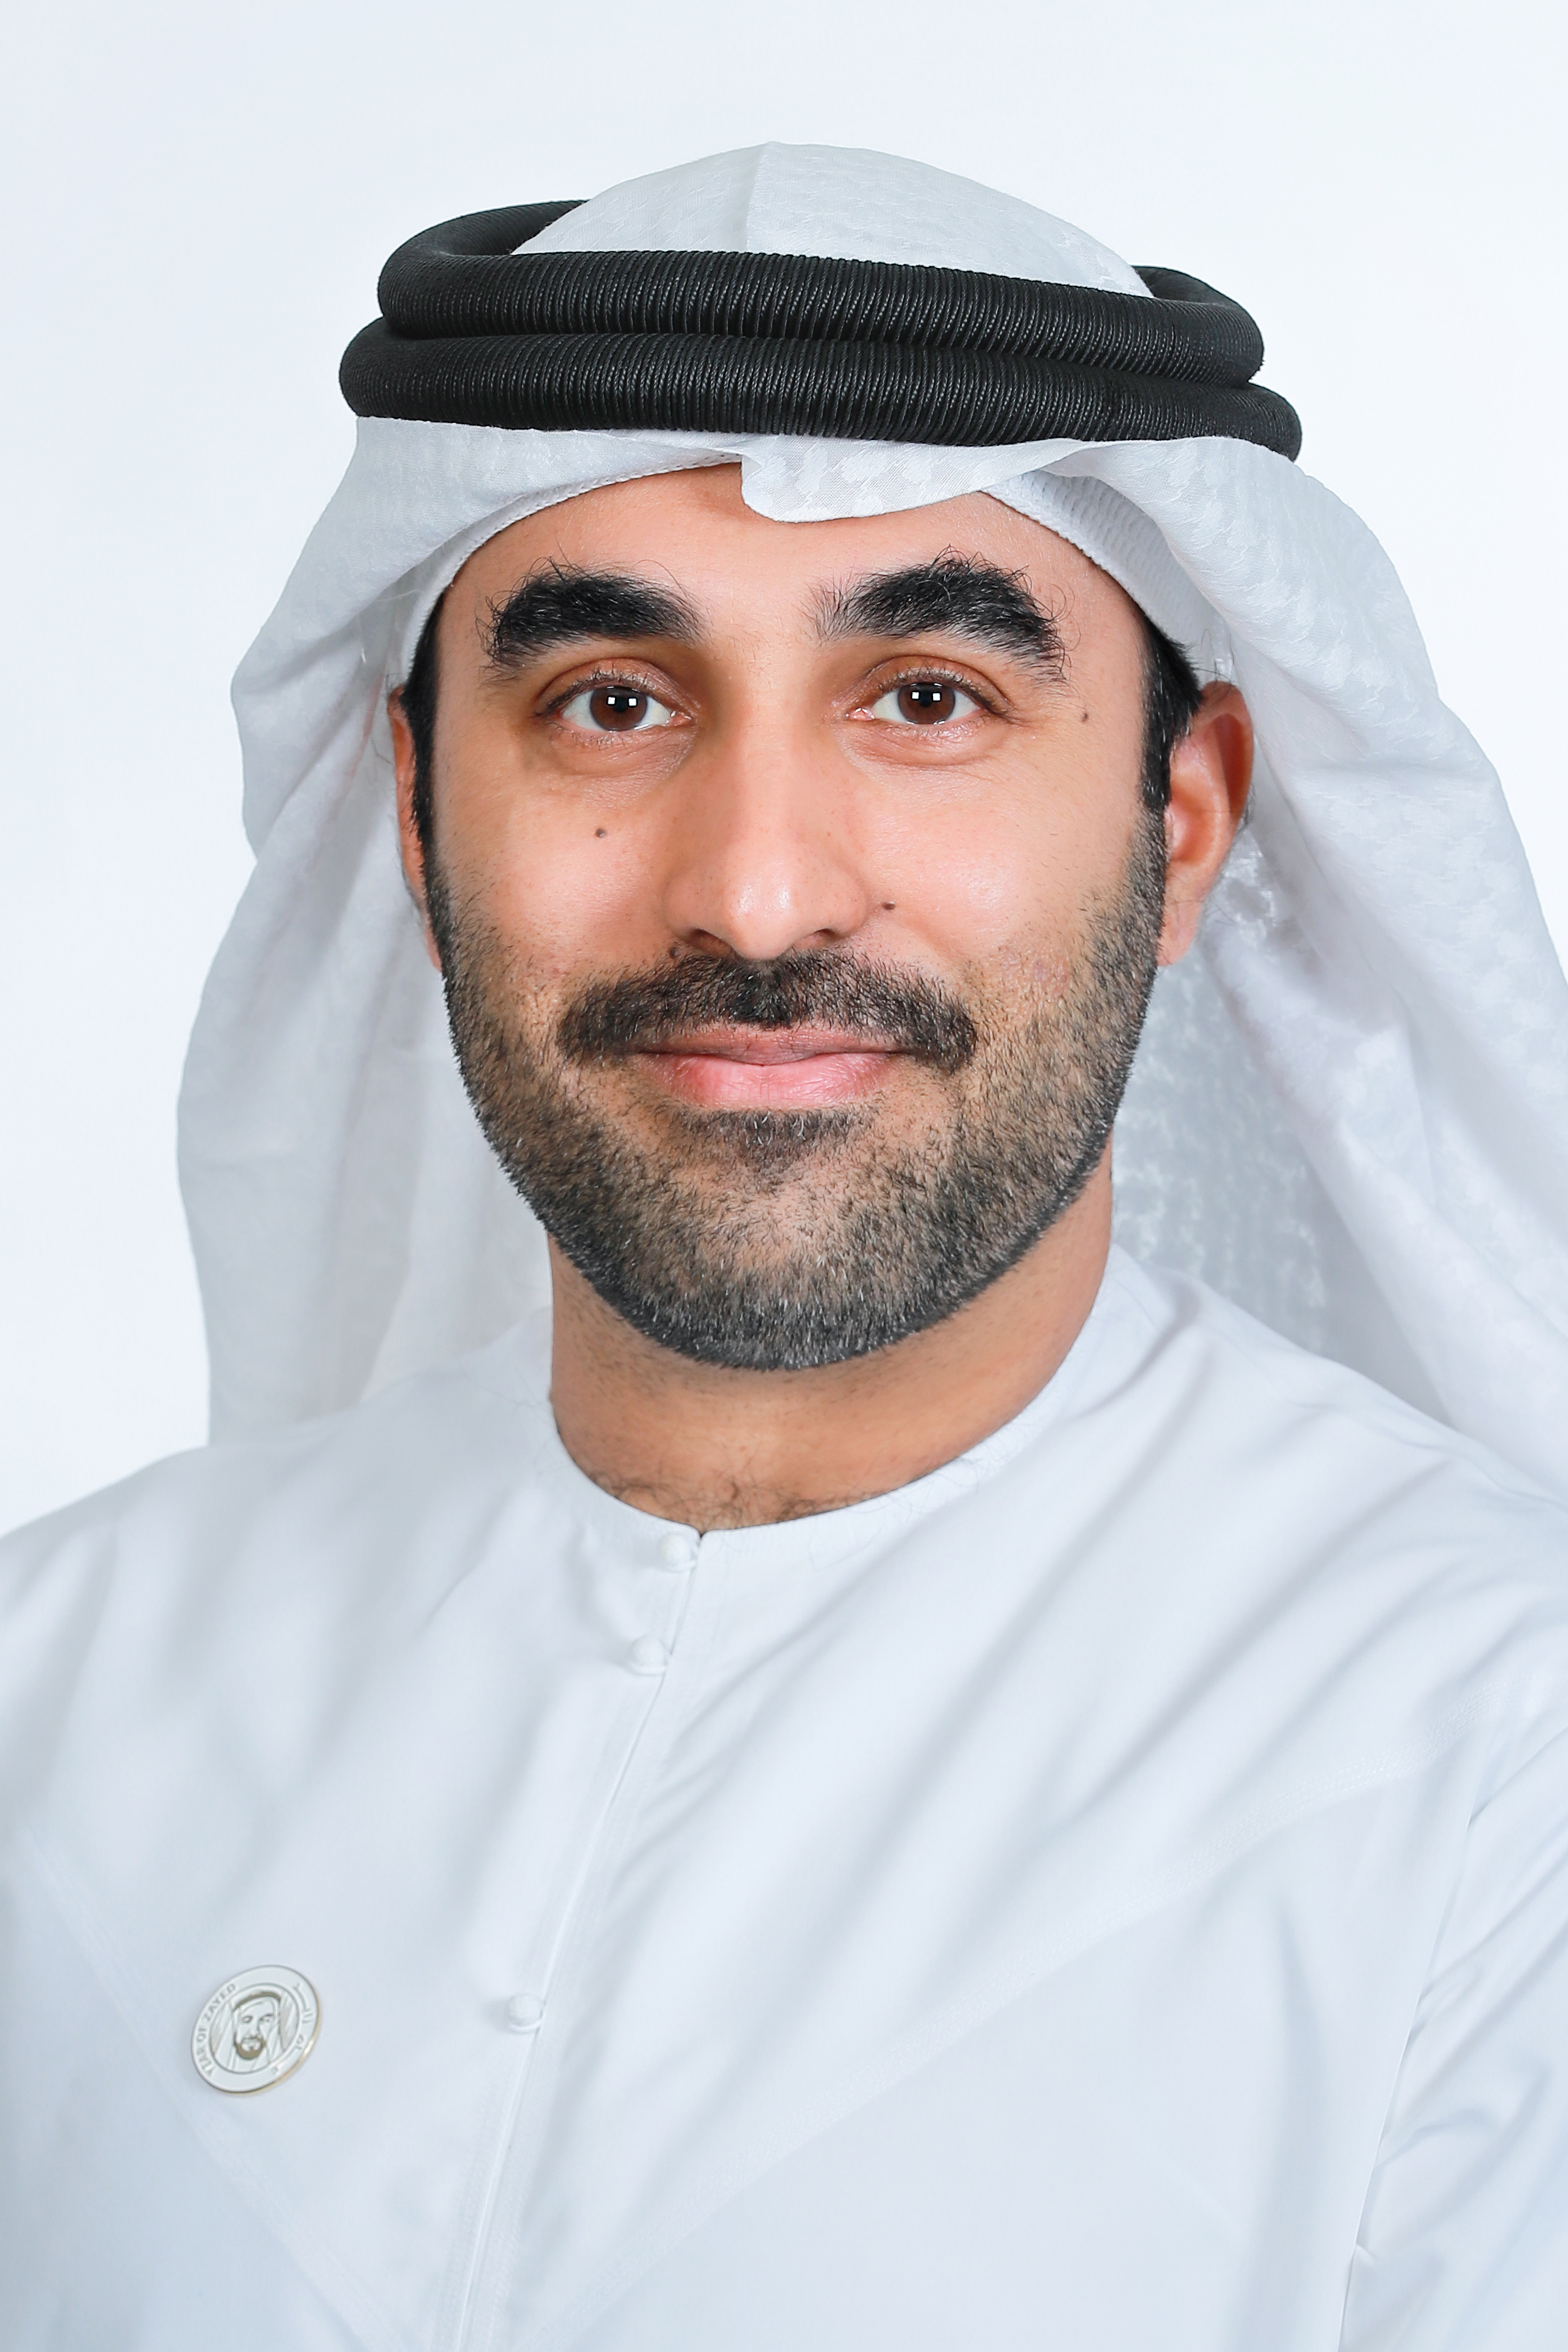 Dr. Saeed Alhassan